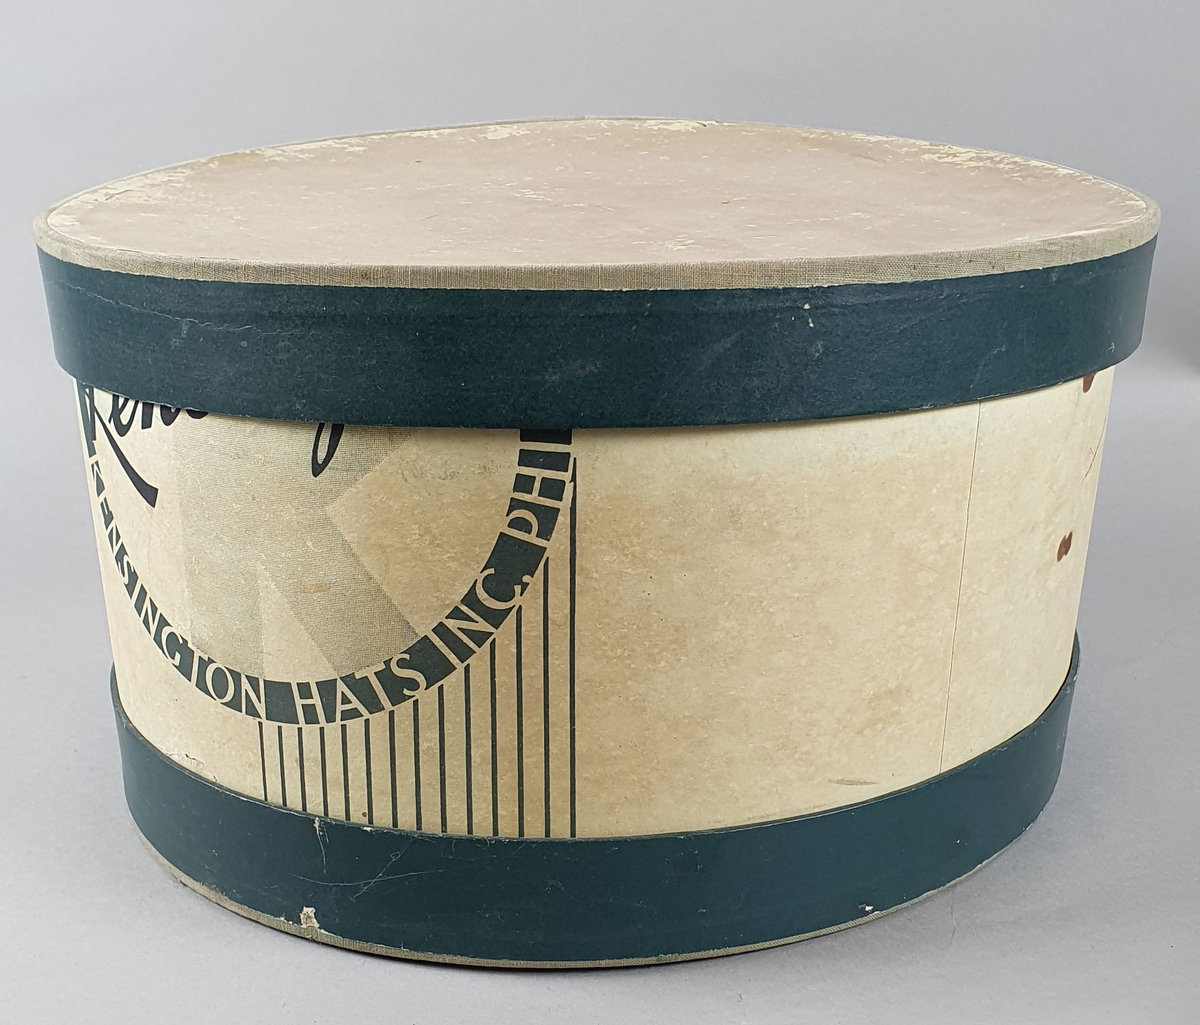 Sylinderformet hatteeske av kartong, med grønn dekor på utsiden. På innsiden er det en sylinderformet innsats med plate for en herrehatt.